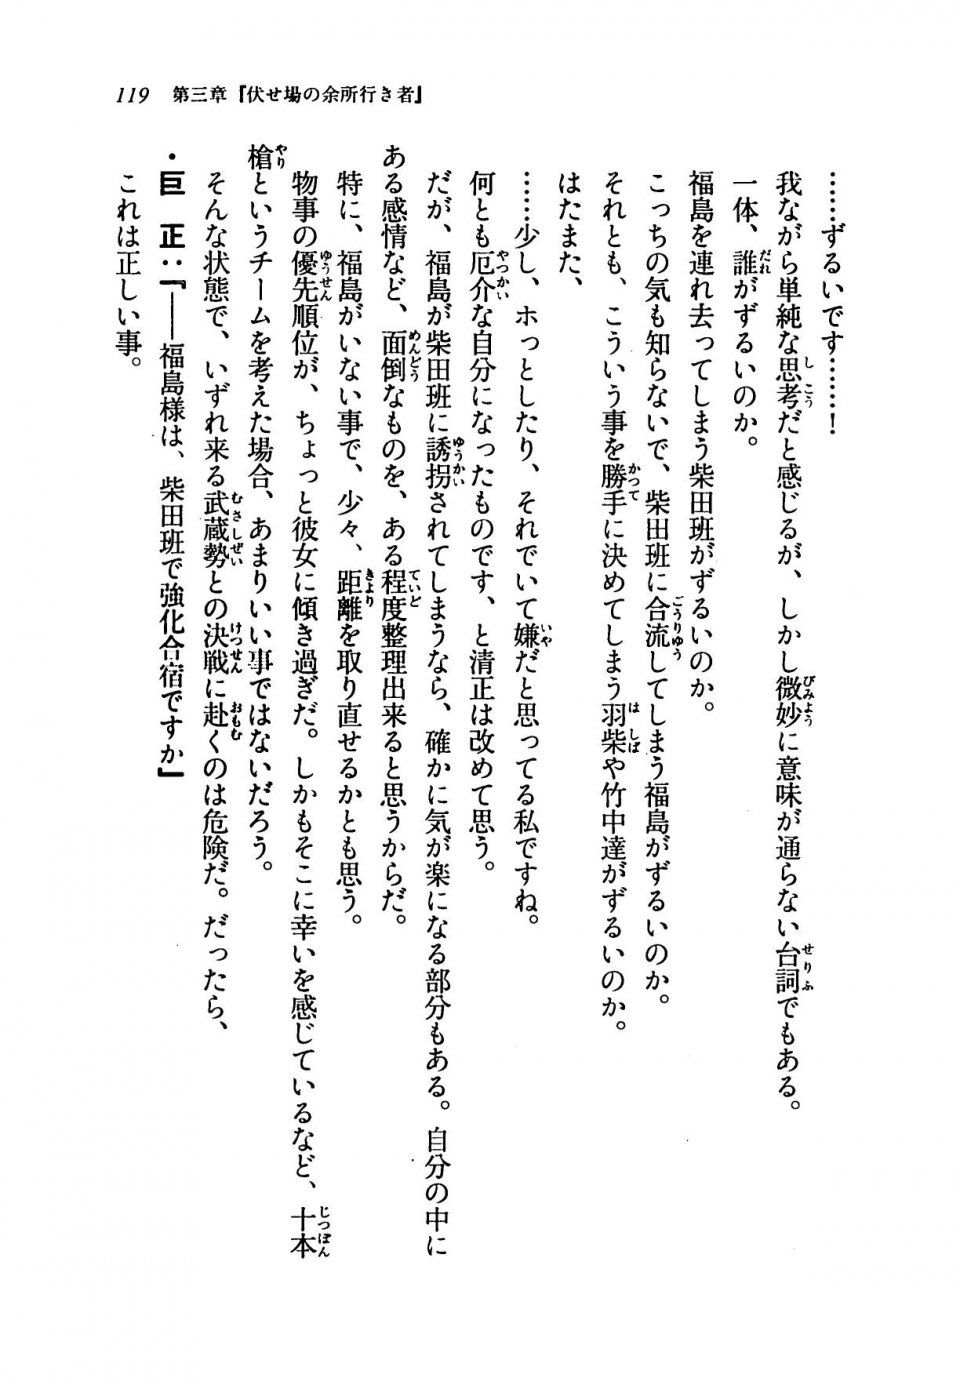 Kyoukai Senjou no Horizon LN Vol 19(8A) - Photo #119